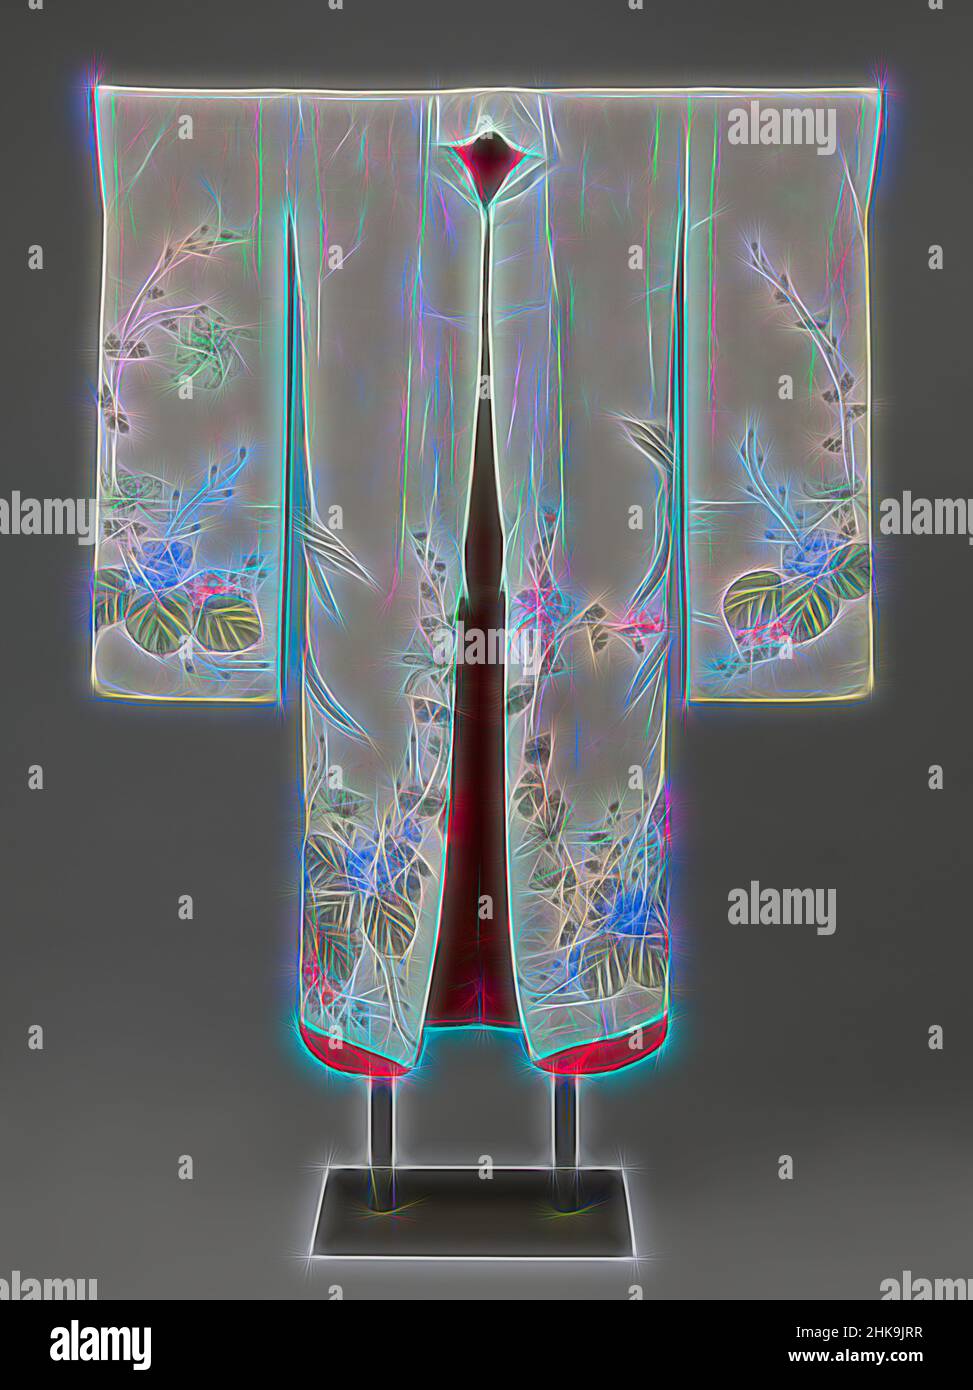 Moderner Kimono-Symbolkonturvektor. CAD gi. Oberer Riemen  Stock-Vektorgrafik - Alamy